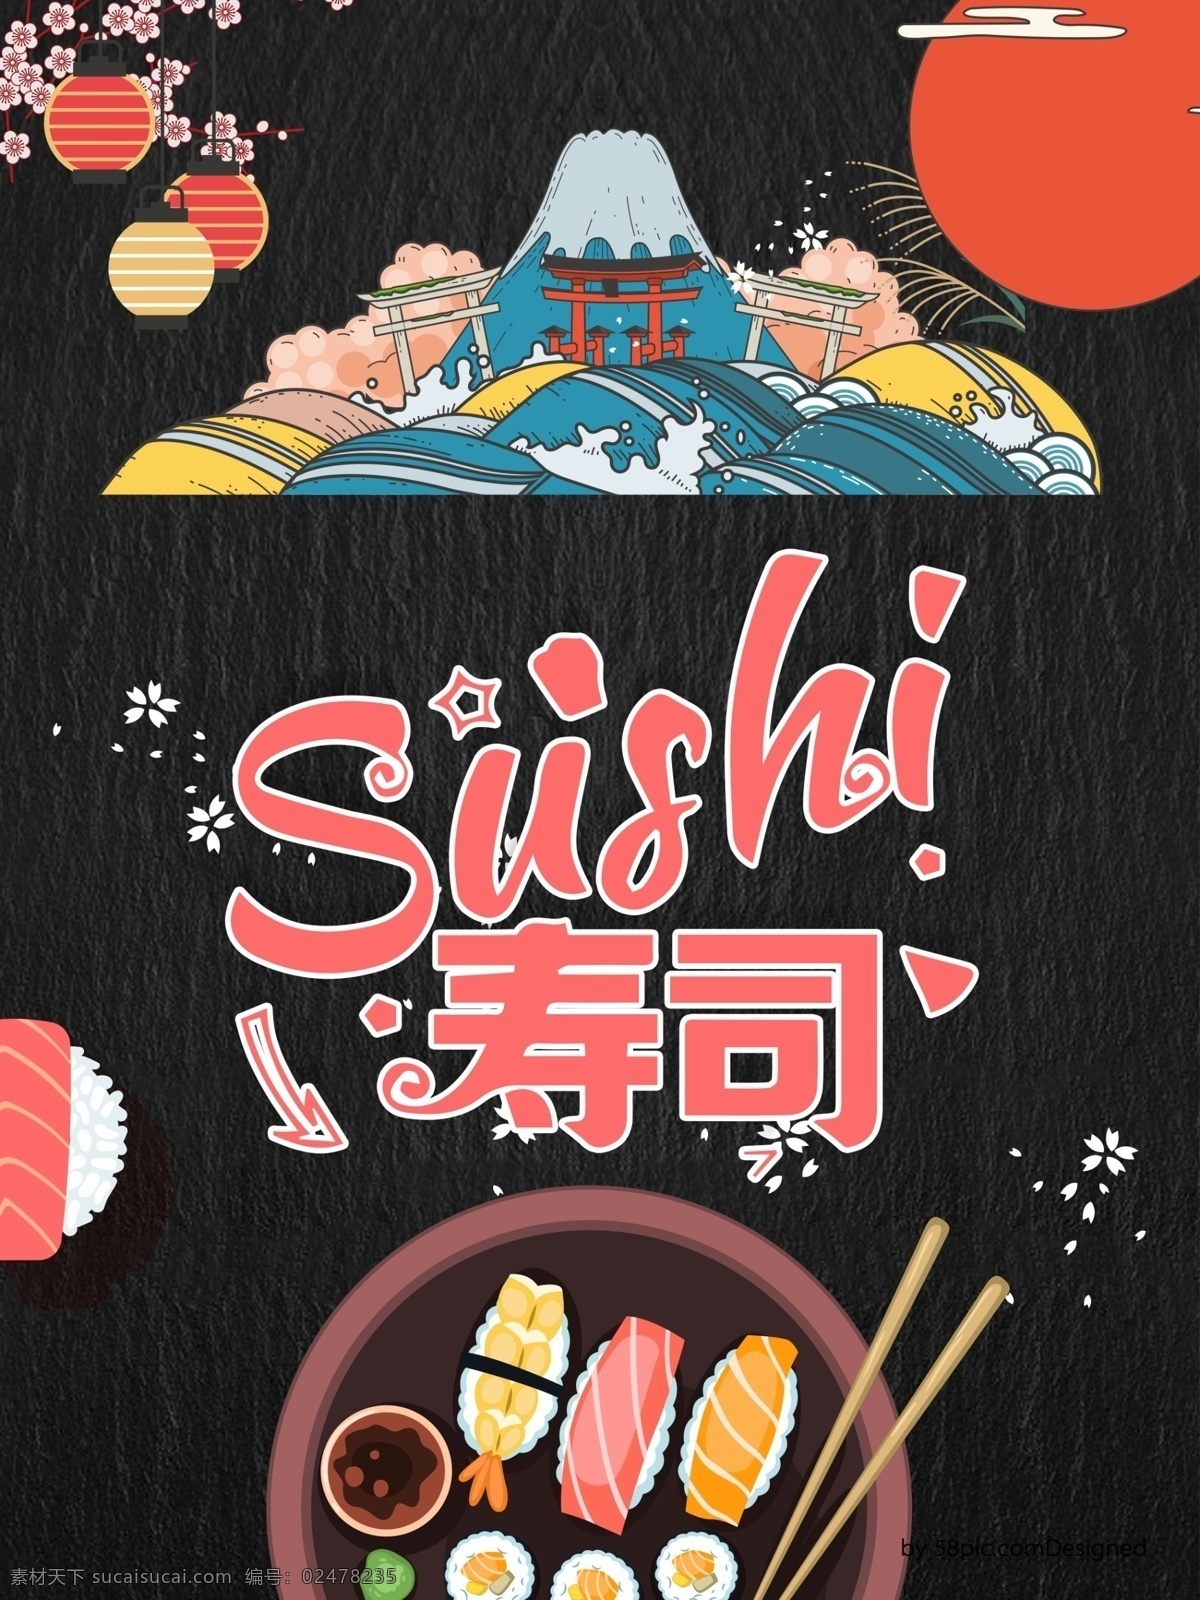 海鲜 日式 风味 寿司 背景 食品 美食 旅游 旅行 日式风格 日本 食物 餐厅 龙虾 新鲜